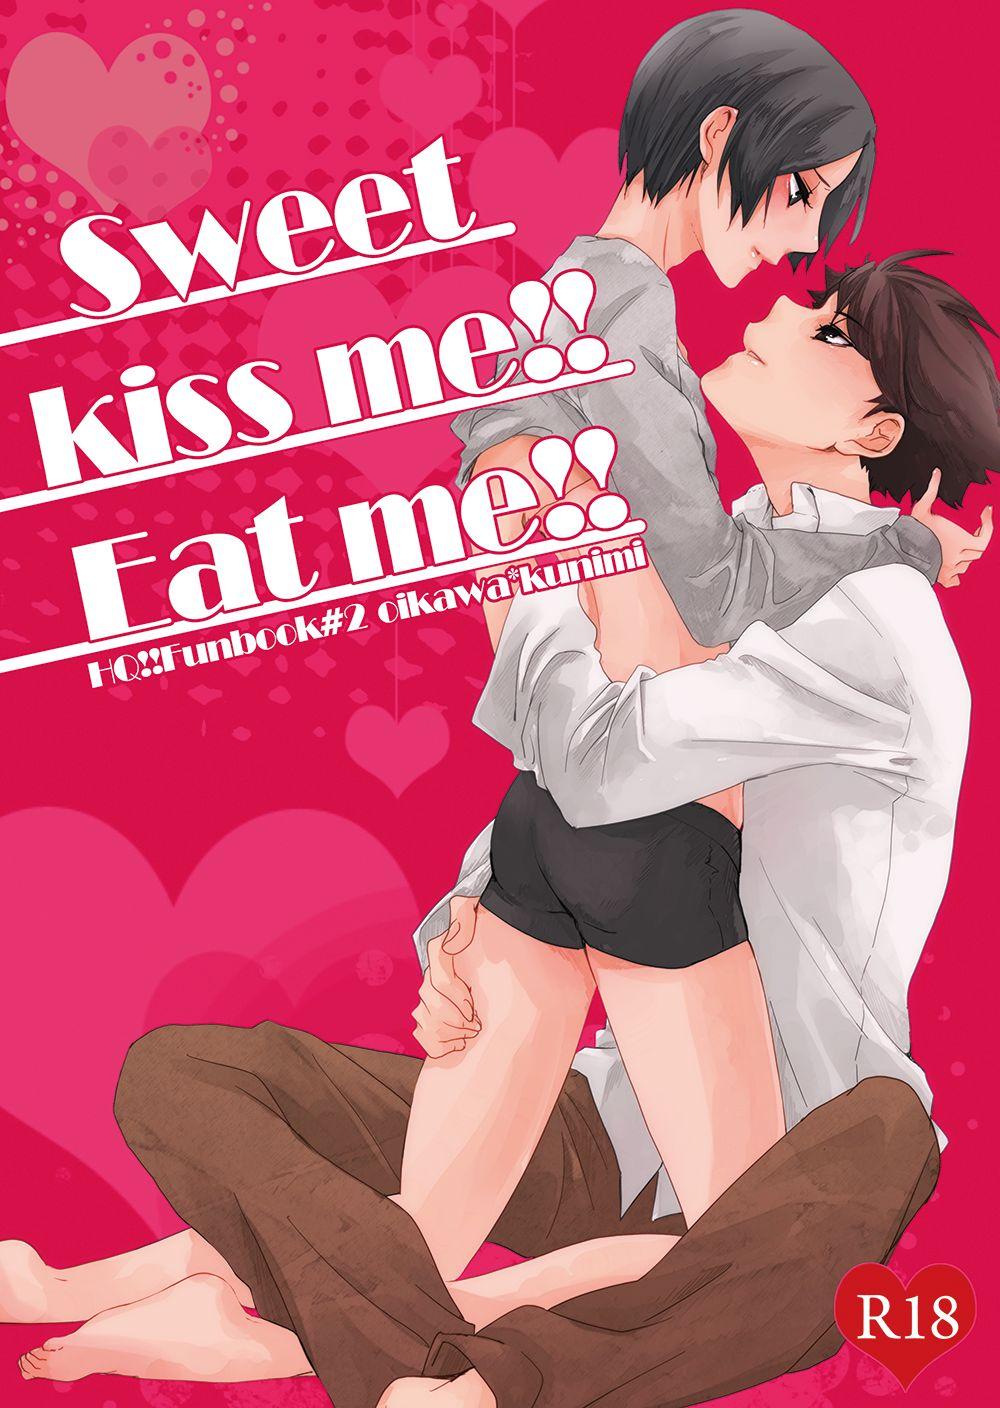 Chichona sweet kiss me!!Eat me!! - Haikyuu Fucked - Picture 1